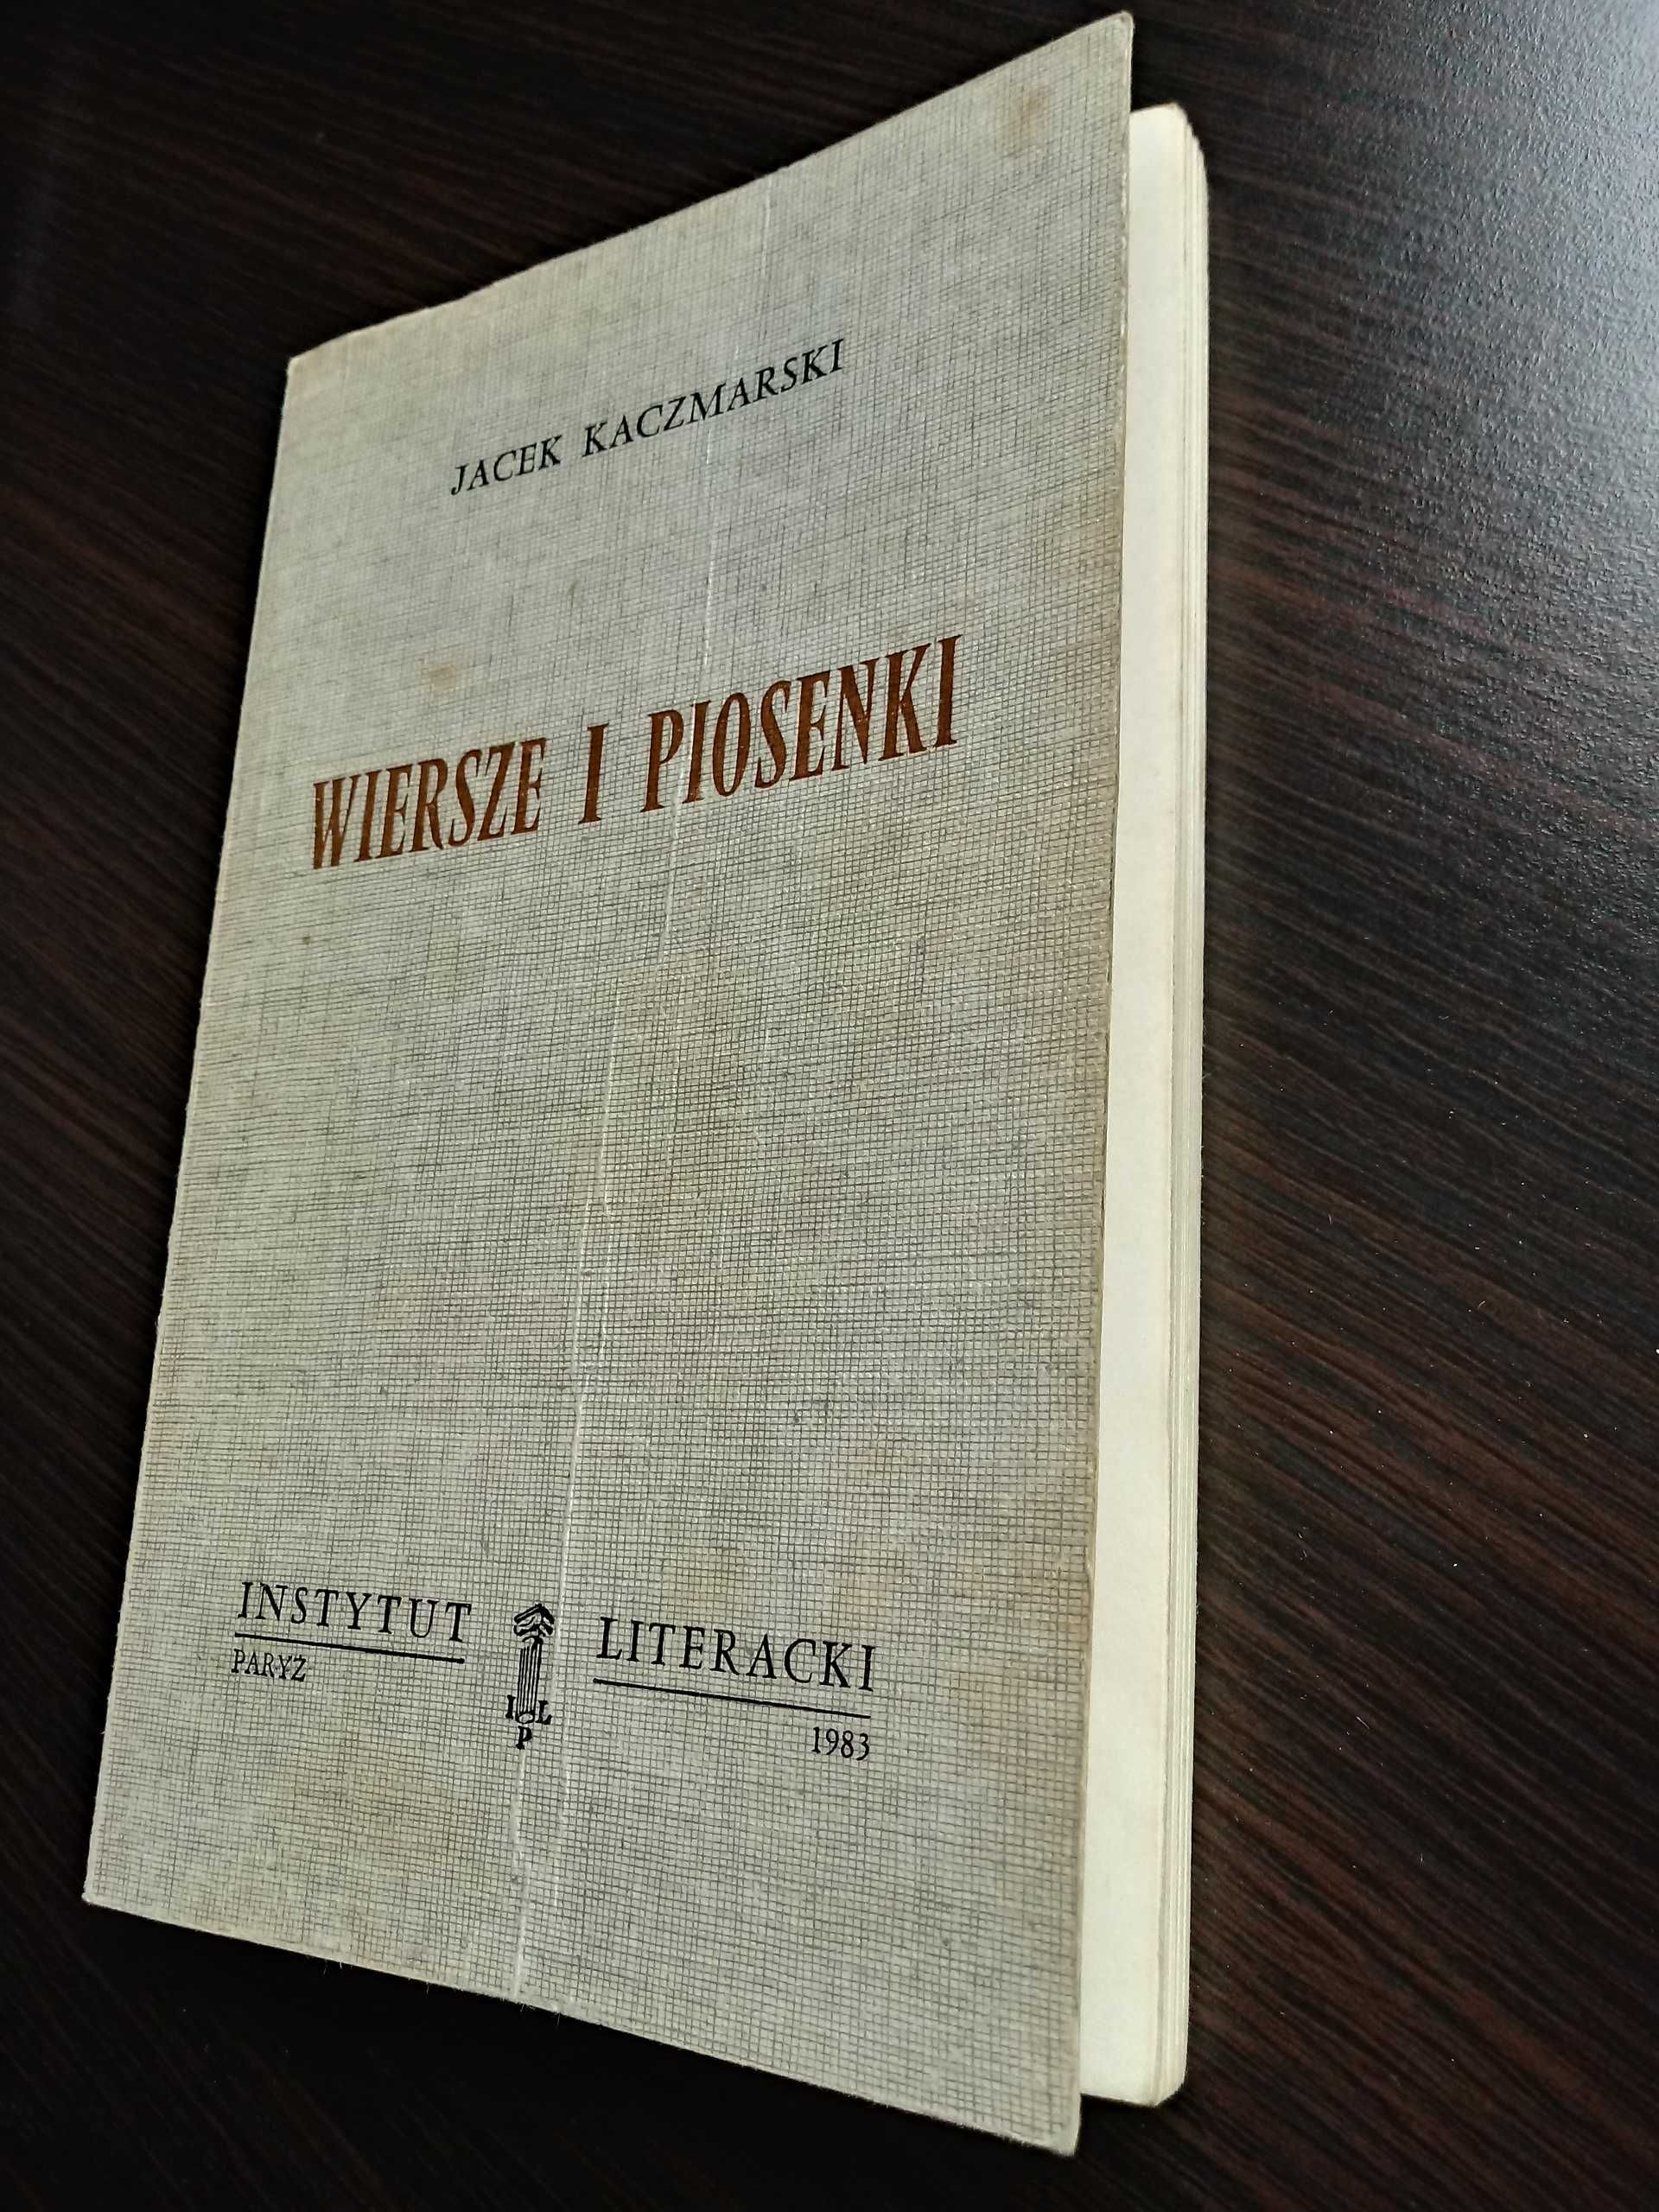 Jacek Kaczmarski, "Wiersze i Piosenki",Inst. Literacki, Paryż, 1983 r.